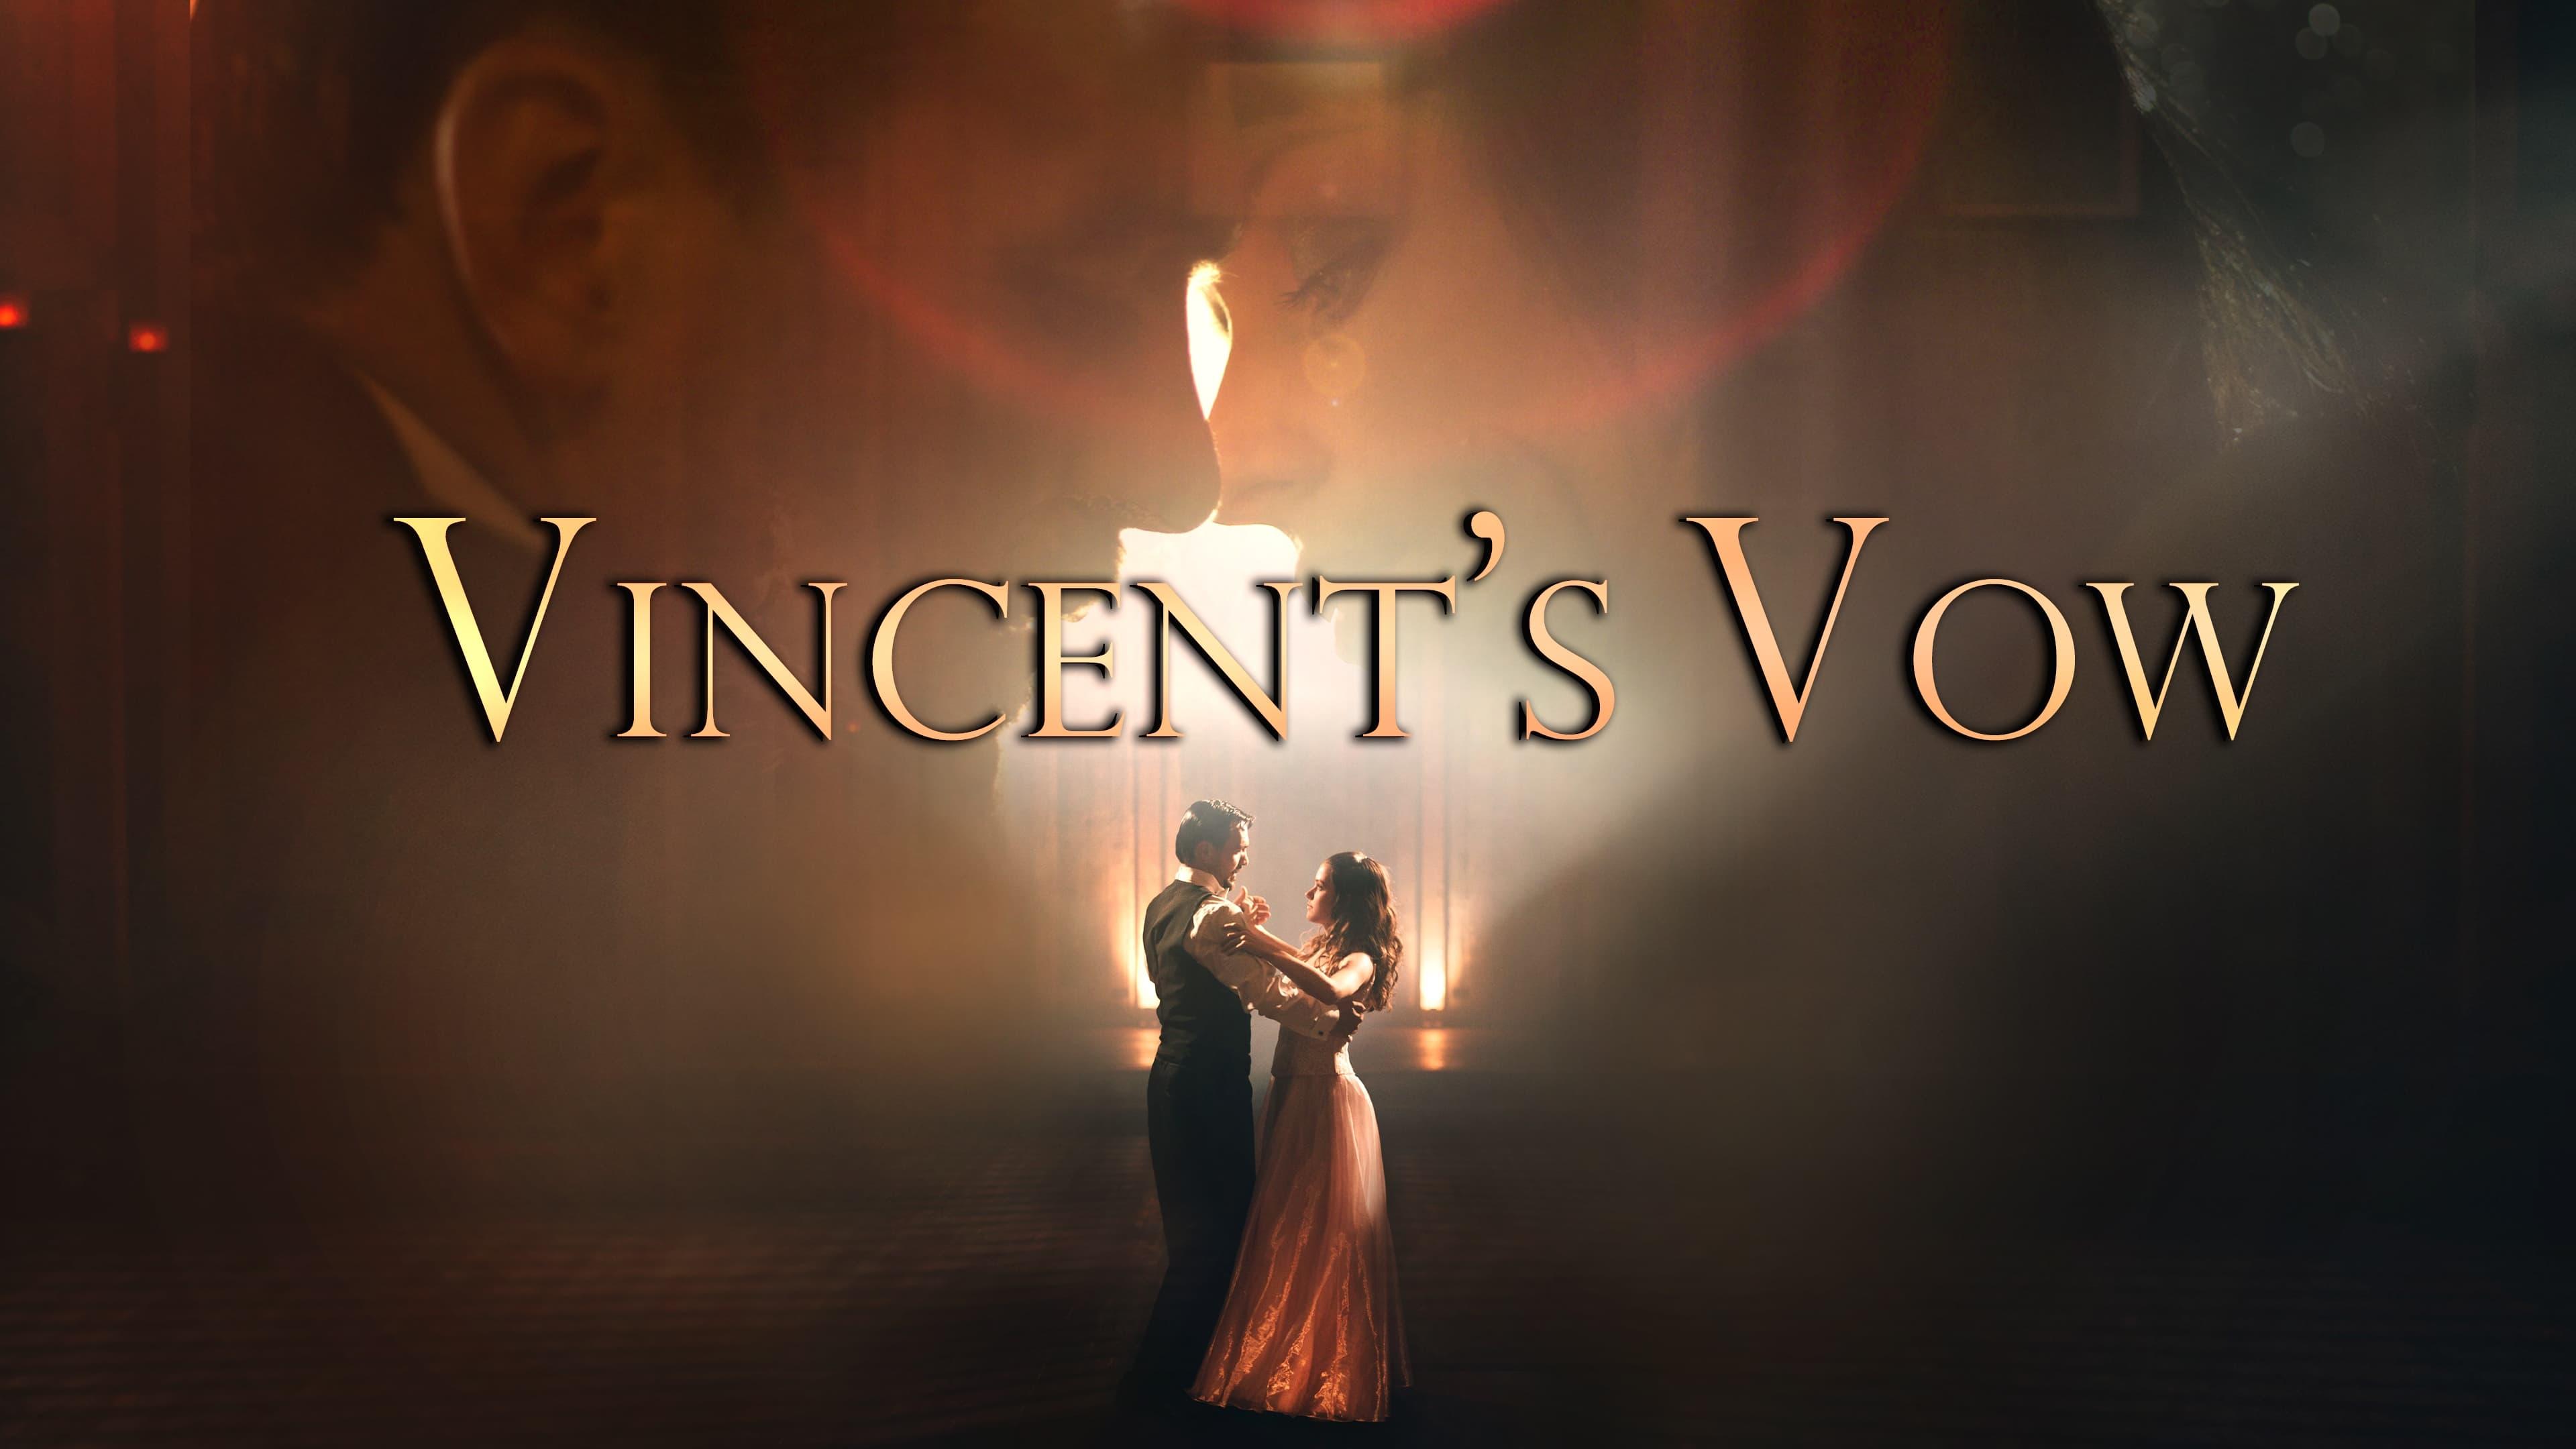 Vincent's Vow backdrop